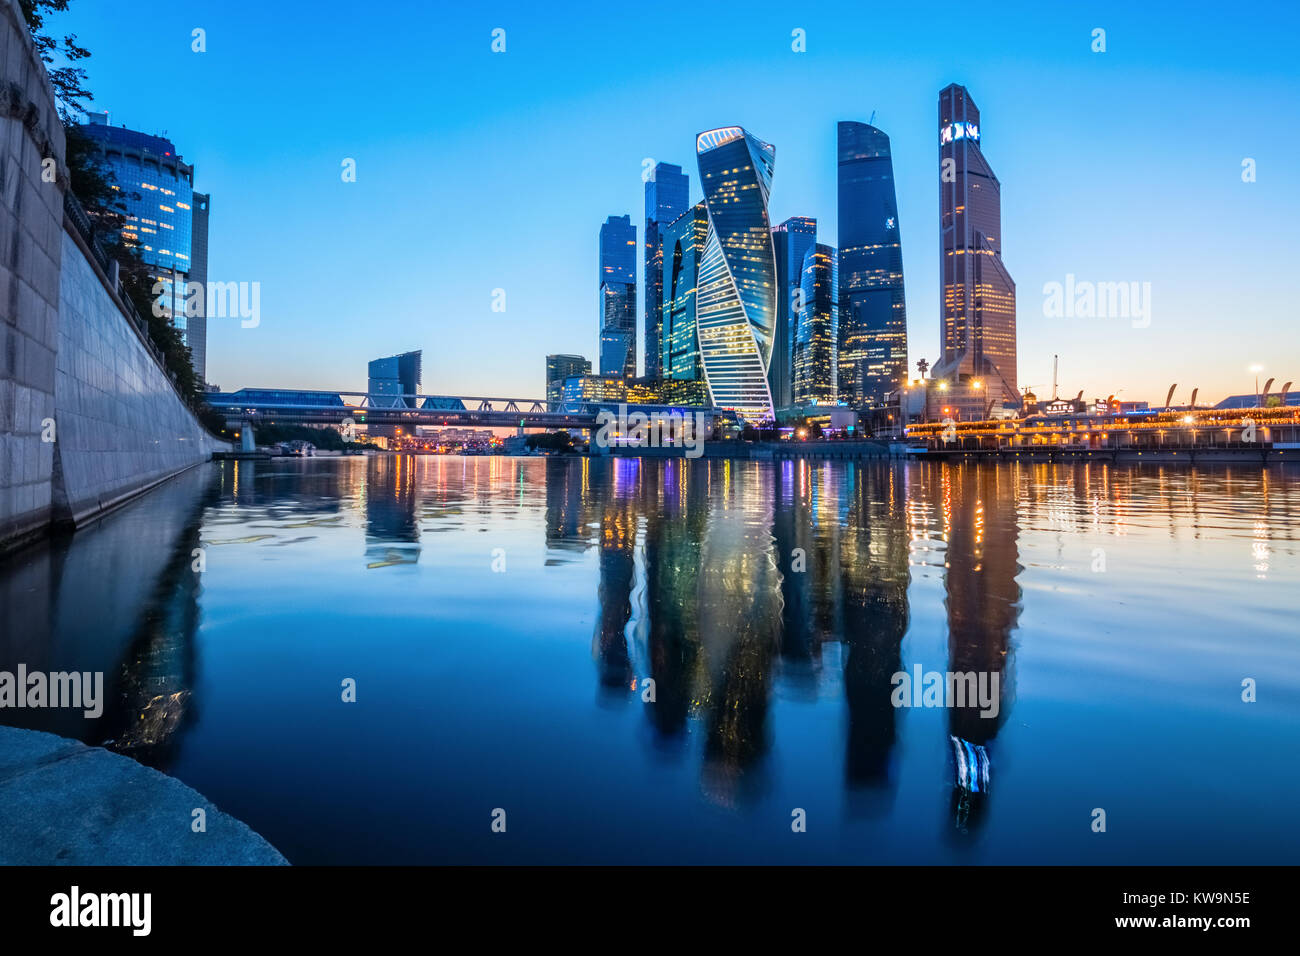 Gratte-ciel futuriste du Centre d'affaires internationales (CBIM), également appelé 'Moscow City' et leurs reflets dans la rivière Moskva, Russie Banque D'Images